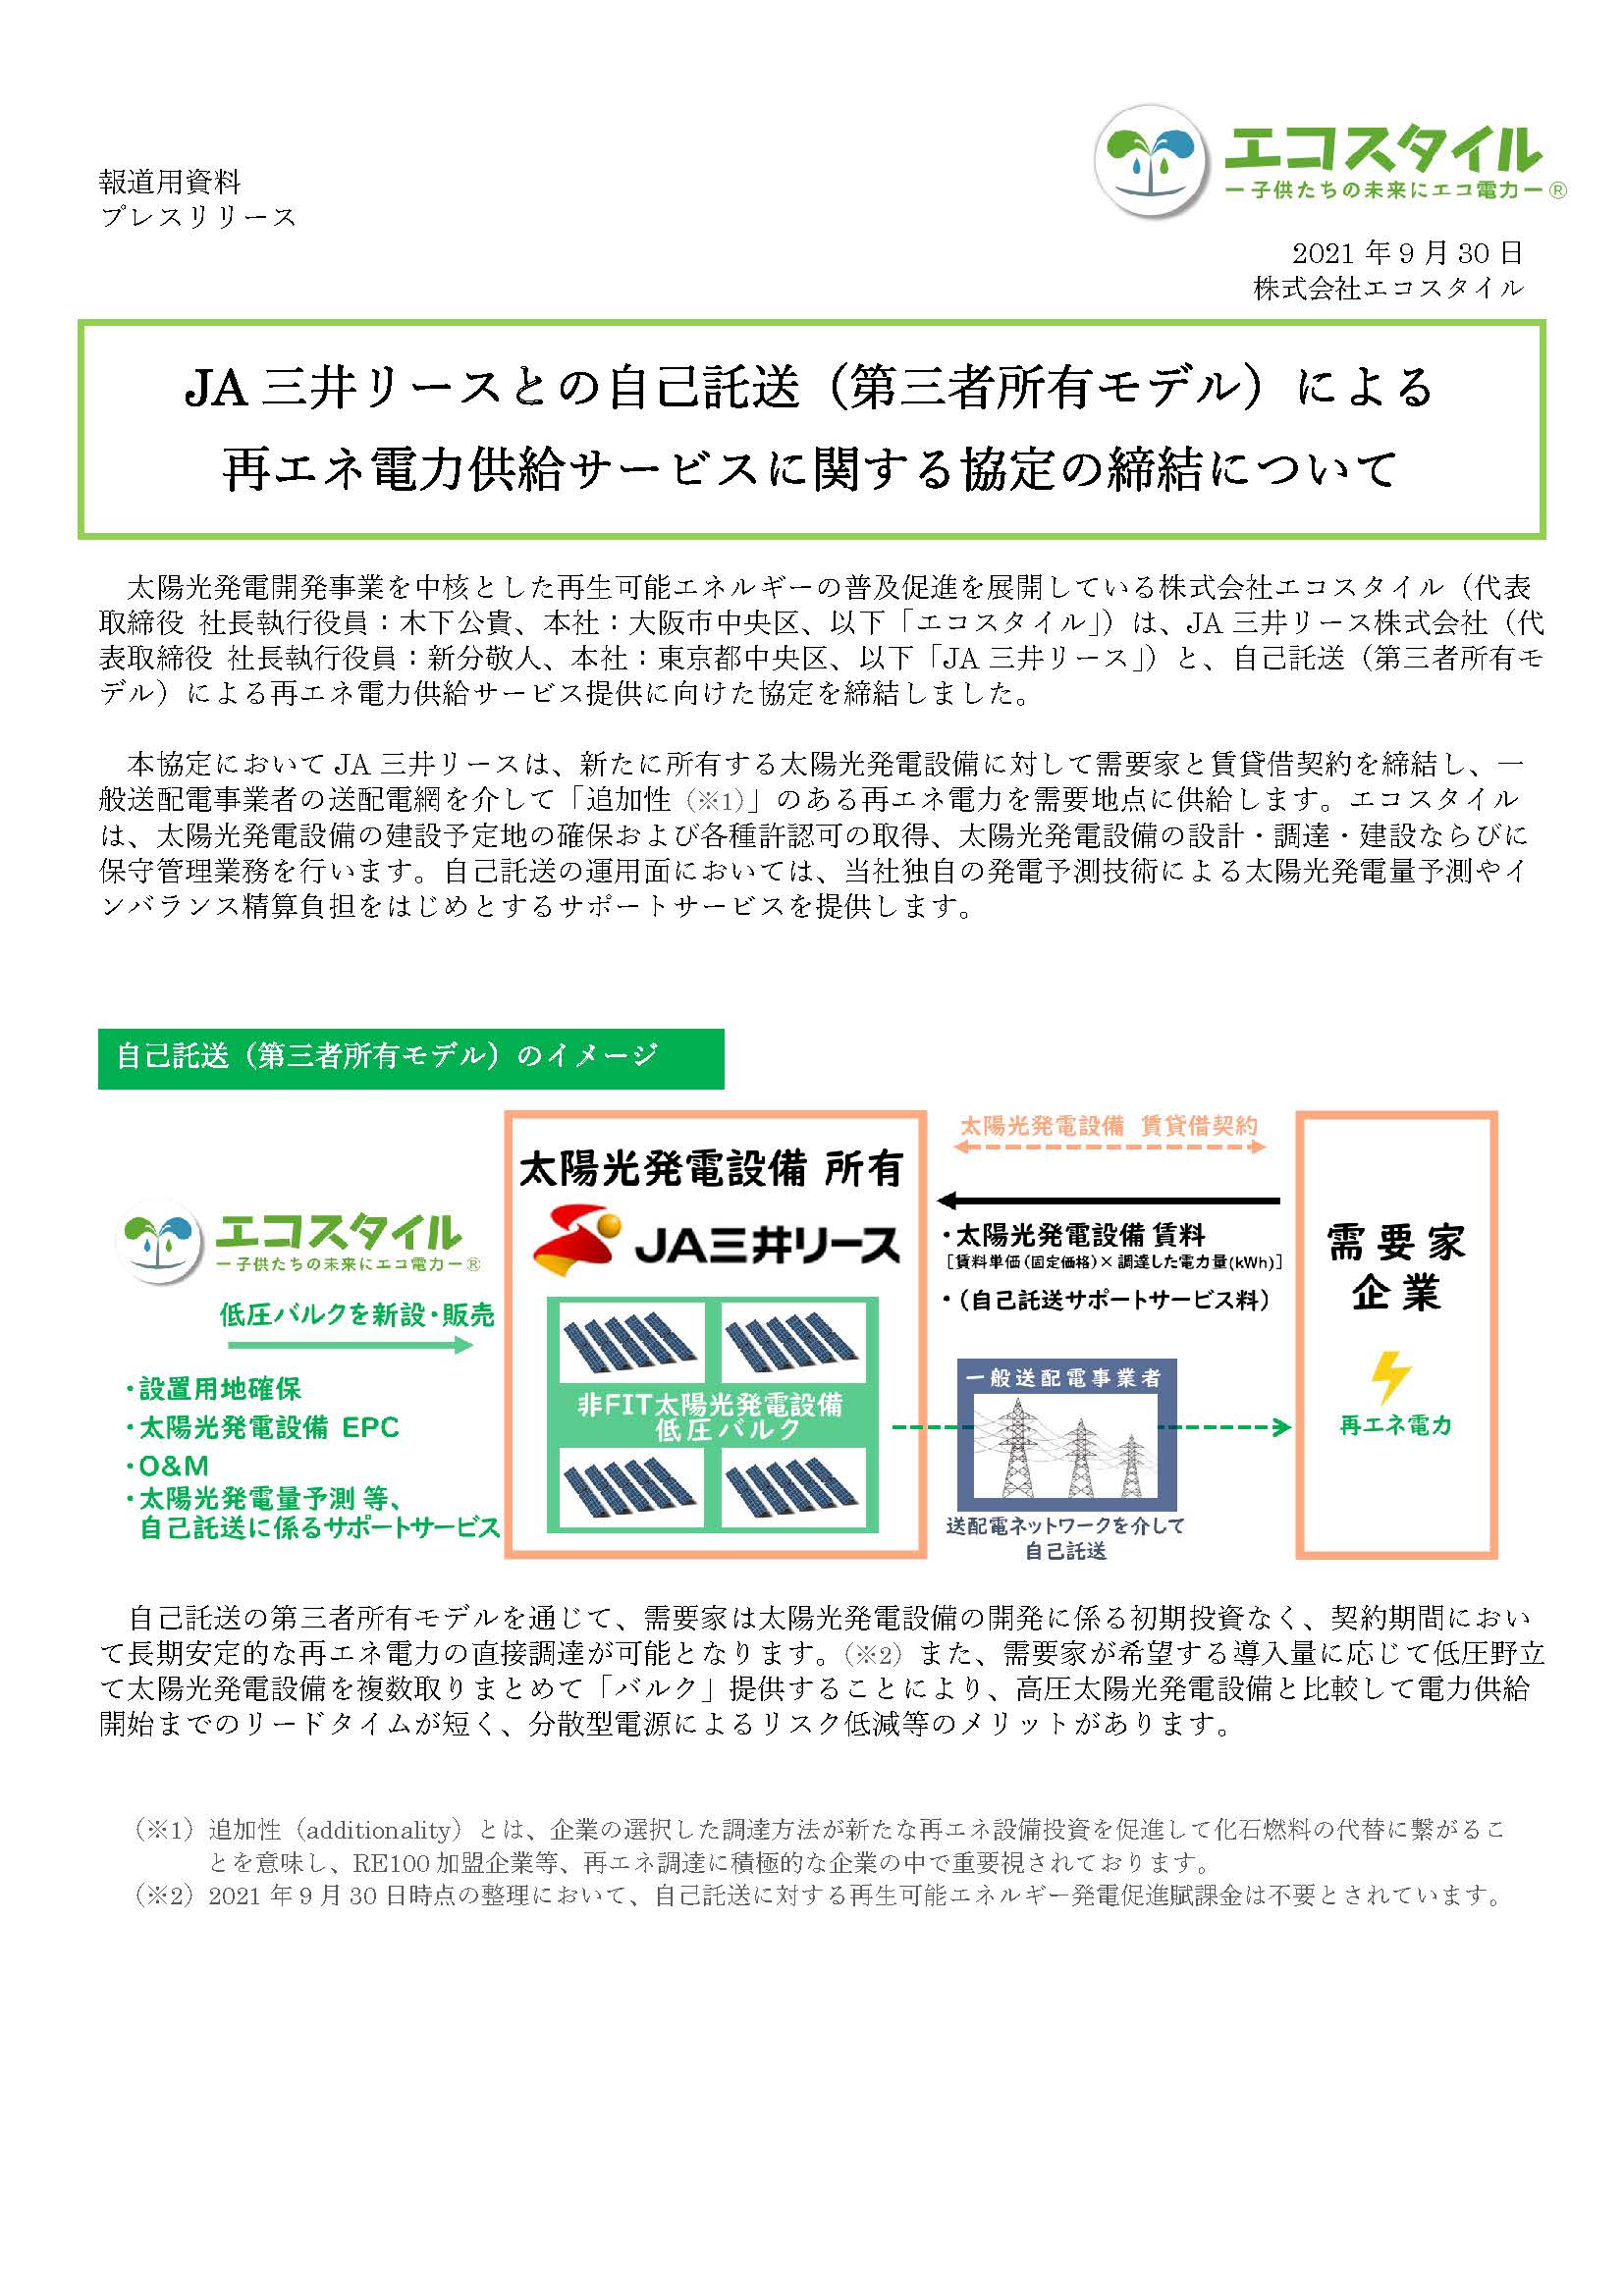 JA三井リースとの自己託送（第三者所有モデル）による再エネ電力供給サービスに関する協定の締結について